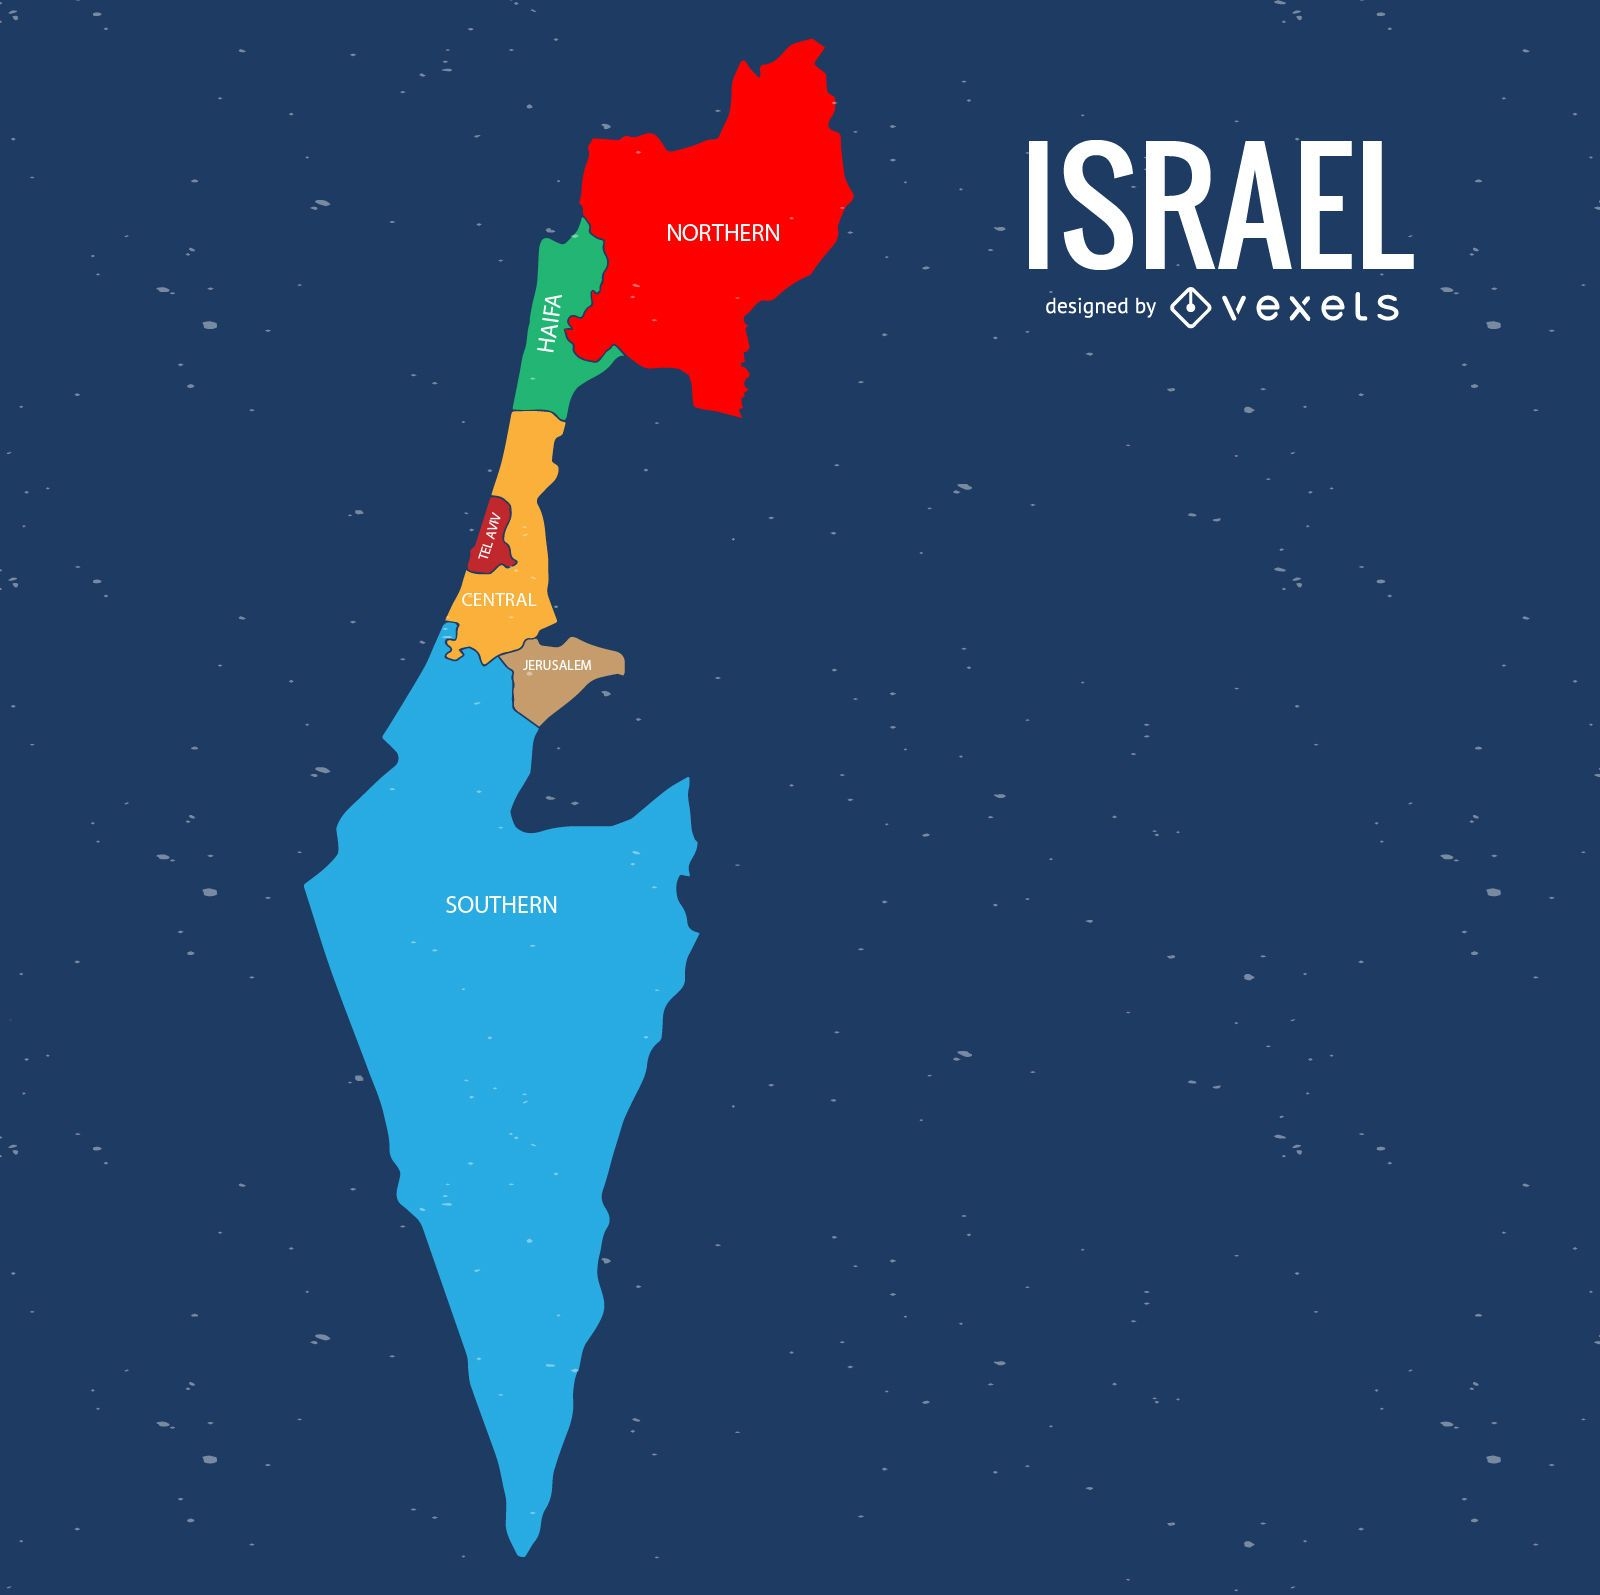 Mapa da divis?o administrativa de Israel